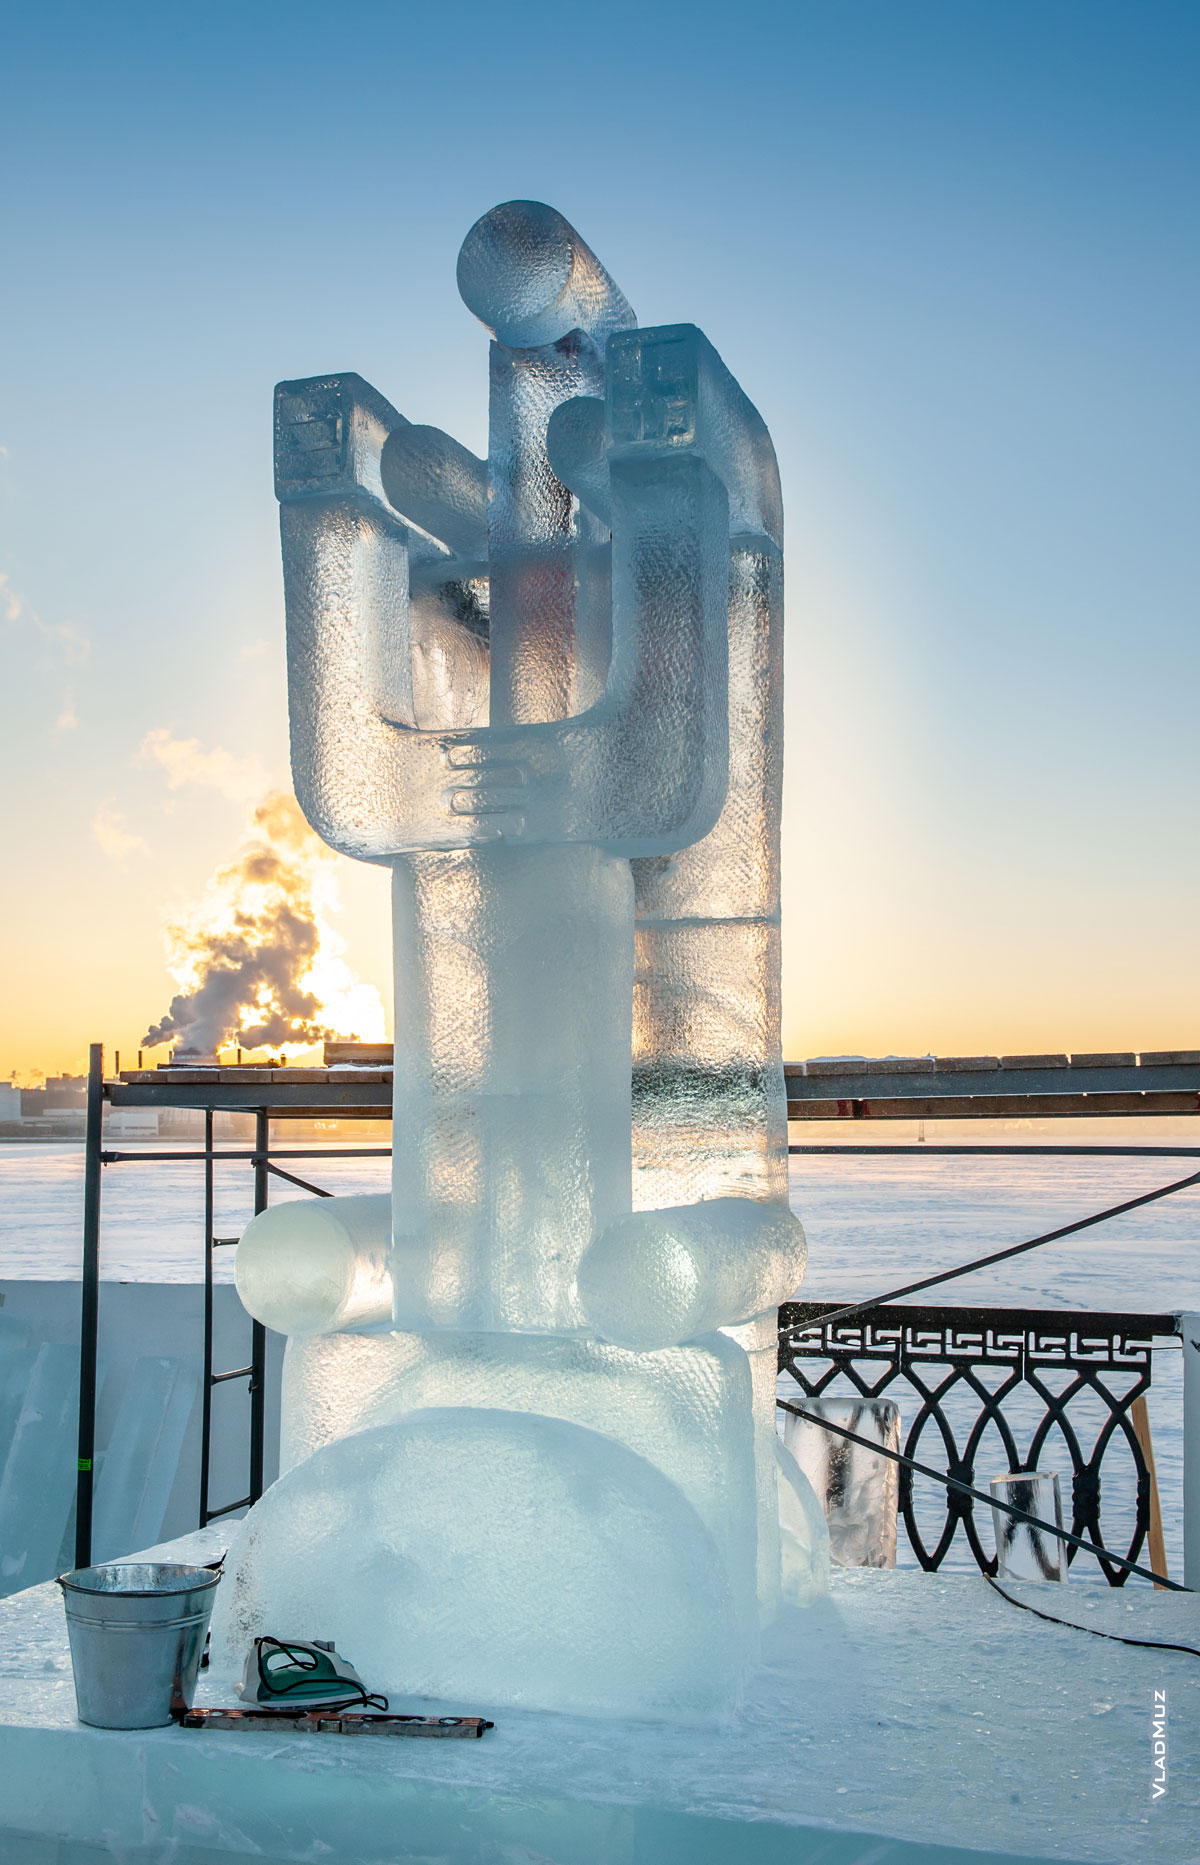 Ижевск, фестиваль «Удмуртский лед 2018»: фото ледовой скульптуры «Магнит»